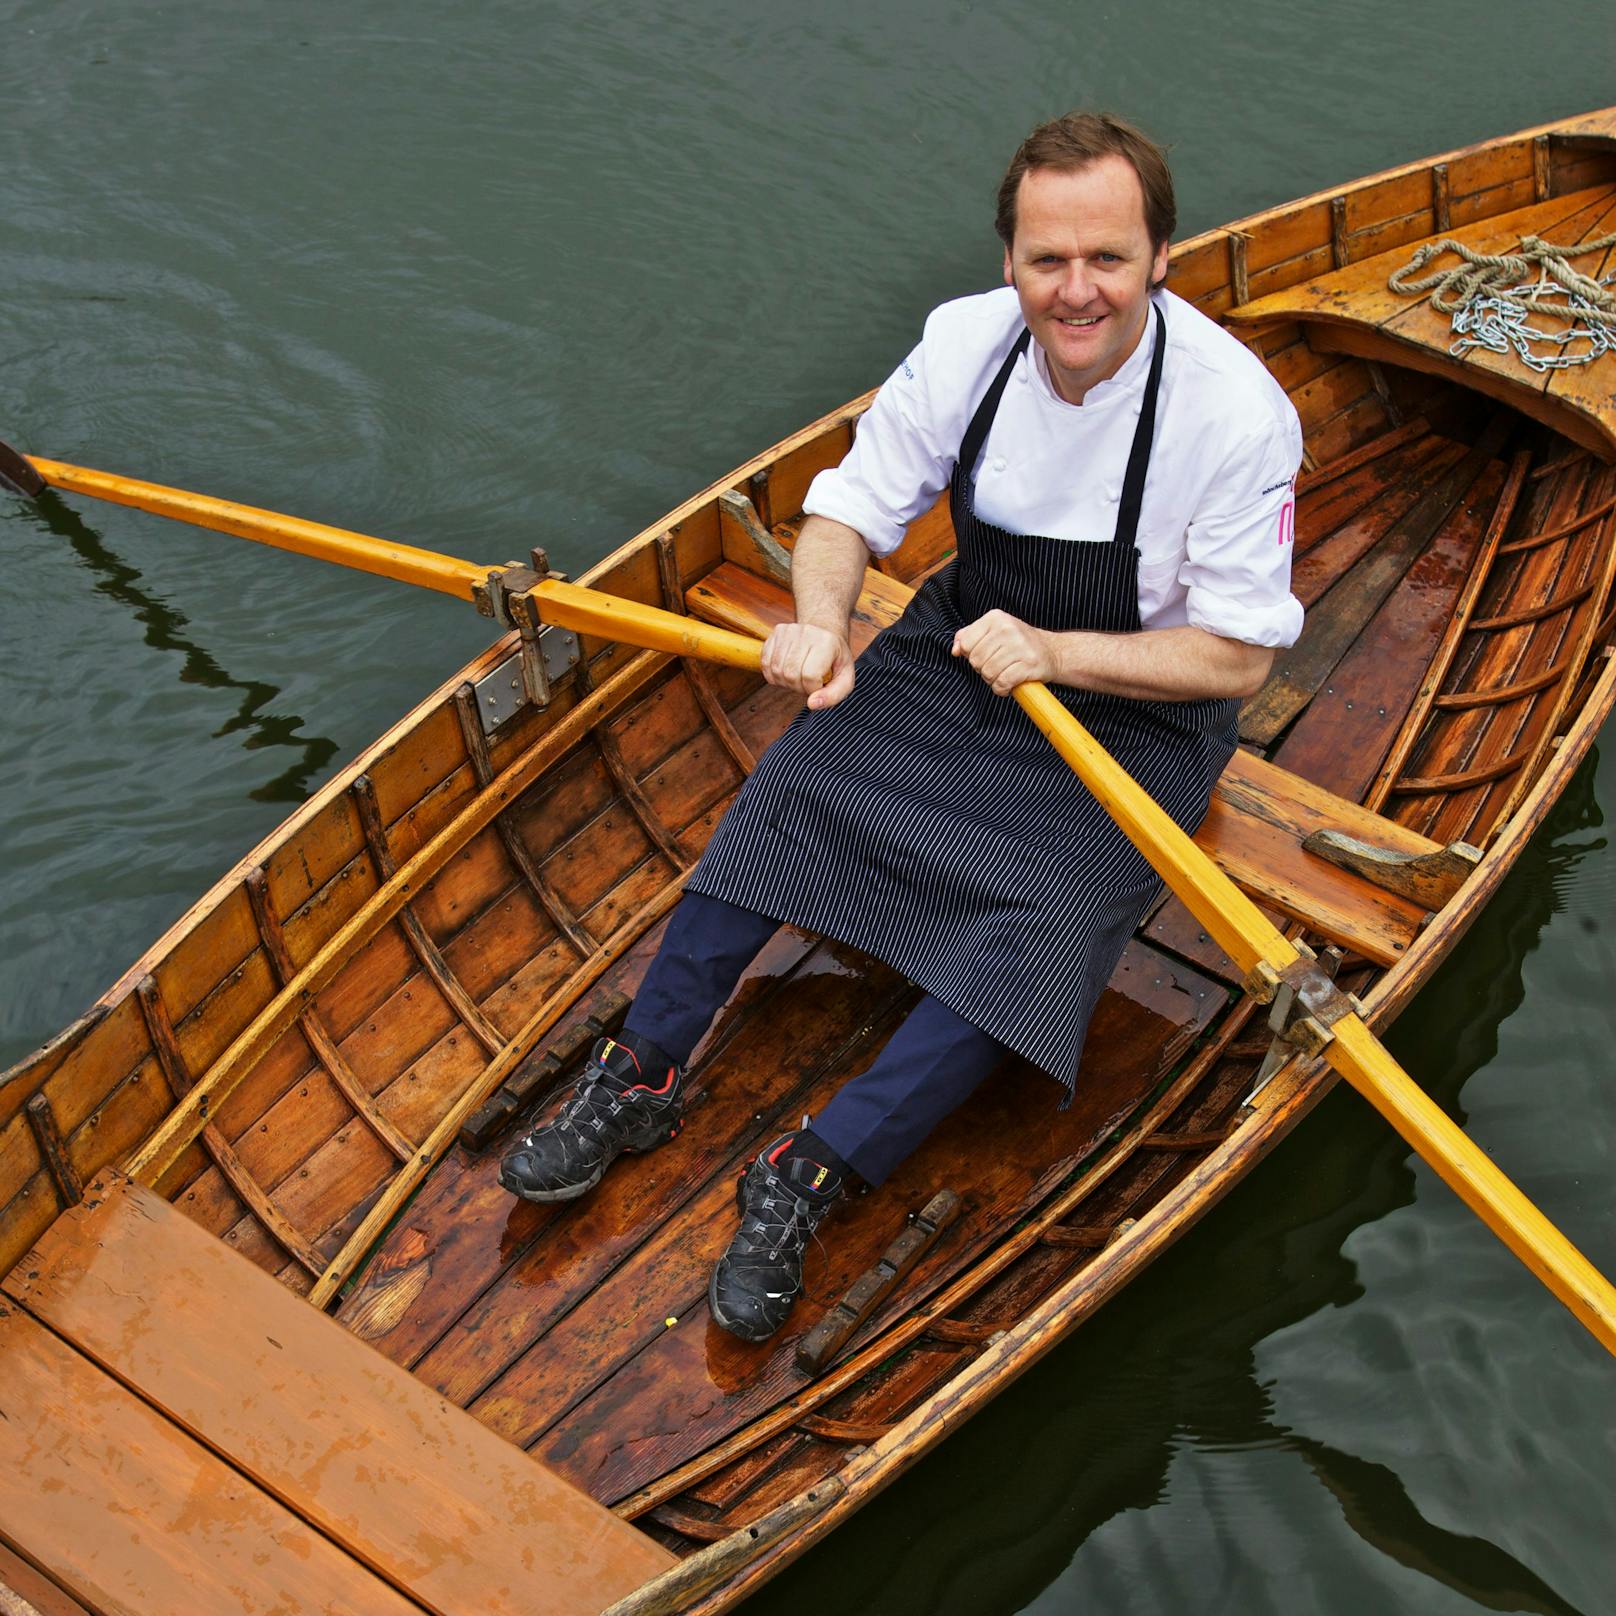 Sepp Schellhorn ist Gastronom, Koch und Unternehmer. Archivbild aus dem Jahr 2011.